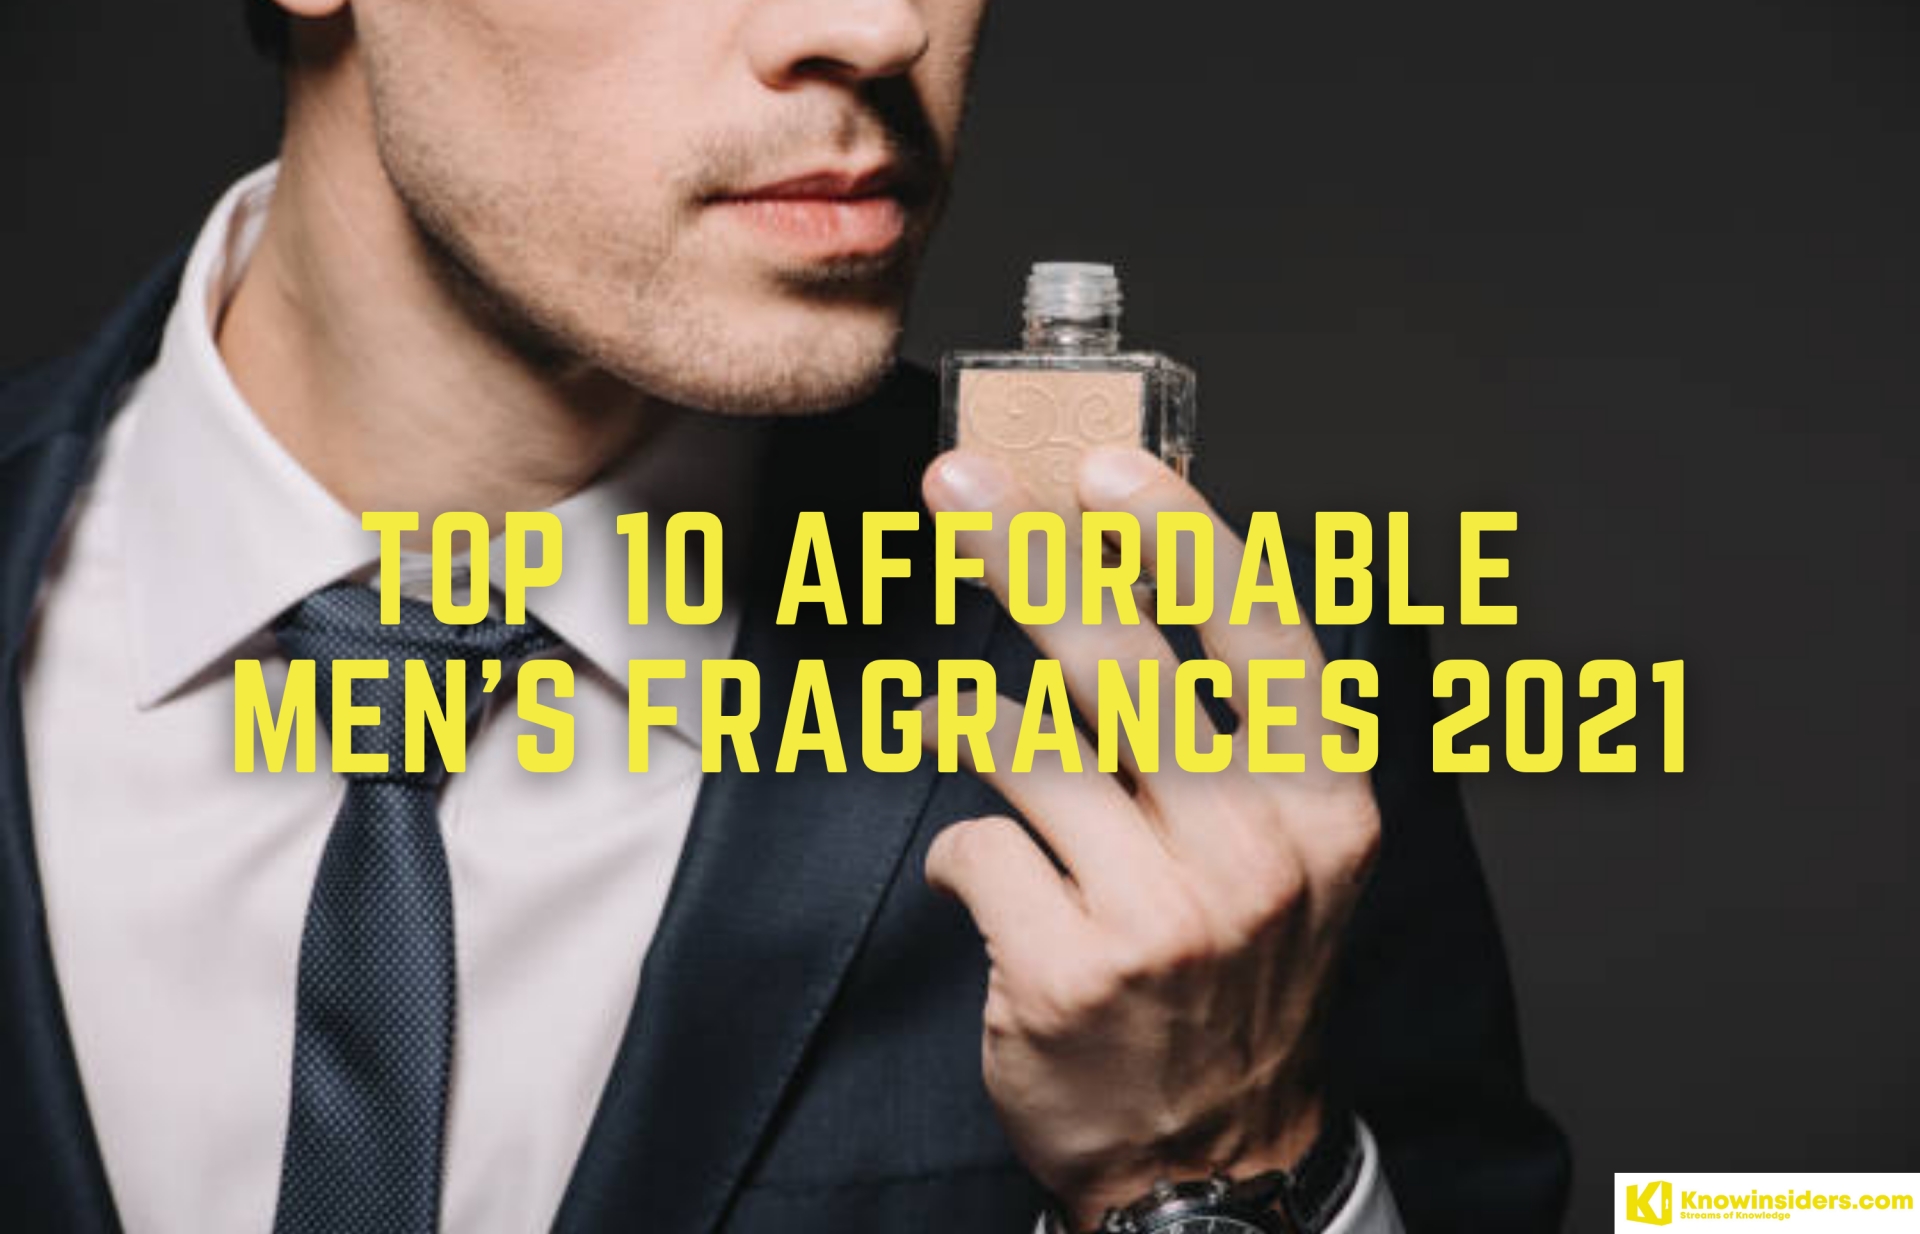 Top 10 Affordable Fragrances for Men 2021/2022